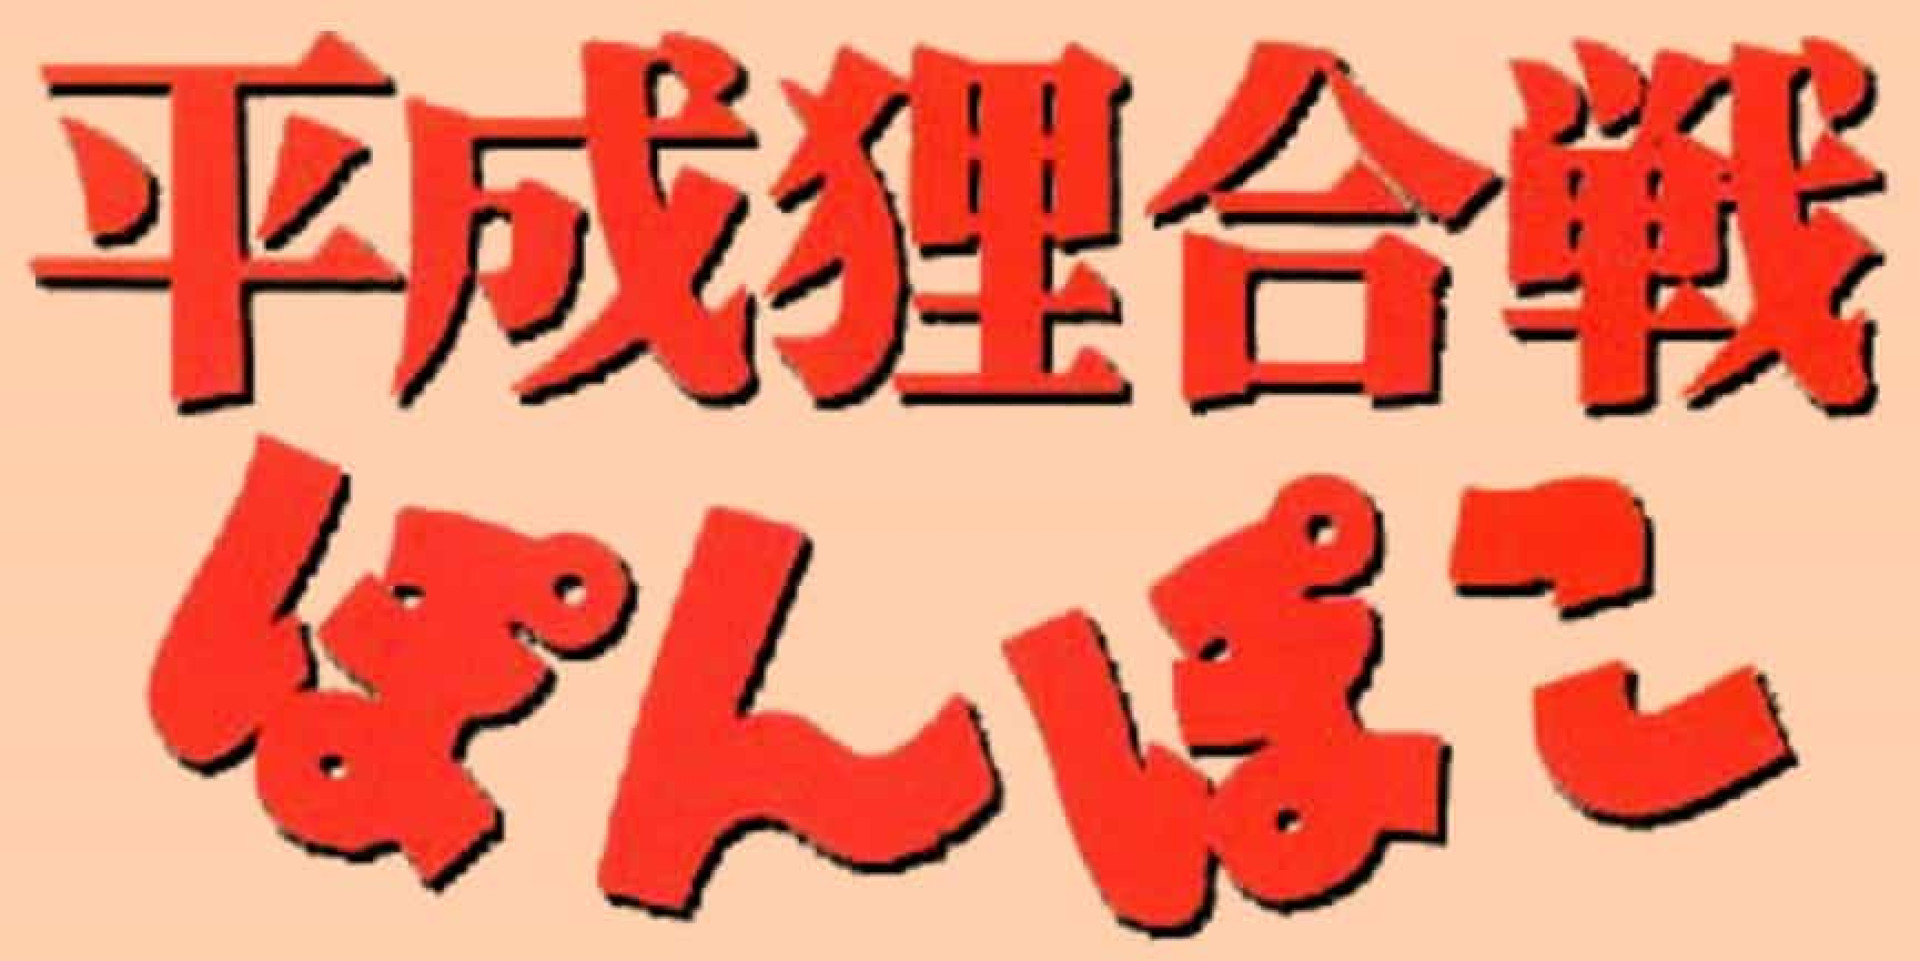 <p>Réalisée en 1994 par Isao Takahata, cette production du studio Ghibli est beaucoup trop sous-estimée. Le film raconte l'histoire d'une communauté de Tanuki, gentils petits rongeurs, qui doivent mettre leurs différences personnelles de côté et s'unir afin de combattre les bulldozers et les ouvriers qui cherchent à raser leur forêt, pour construire de nouveaux bâtiments.</p><p><a href="https://www.msn.com/fr-fr/community/channel/vid-7xx8mnucu55yw63we9va2gwr7uihbxwc68fxqp25x6tg4ftibpra?cvid=94631541bc0f4f89bfd59158d696ad7e">Suivez-nous et accédez tous les jours à du contenu exclusif</a></p>